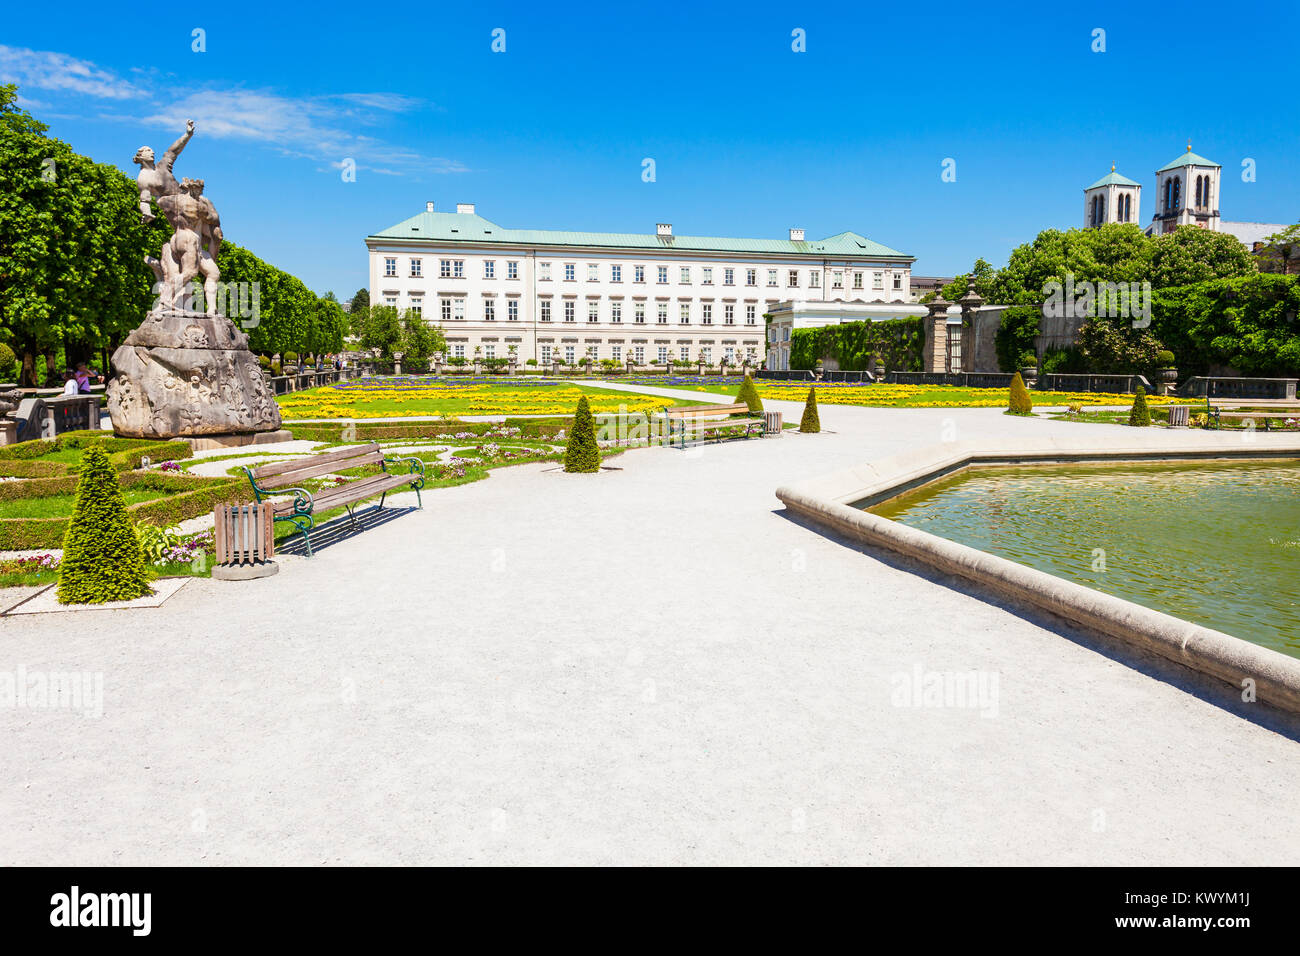 Schloss Mirabell oder Schloss Mirabell ist ein historisches Gebäude in der Stadt Salzburg, Österreich. Schloss Mirabell mit seinen Gärten ist ein UNESCO Weltkulturerbe S Stockfoto